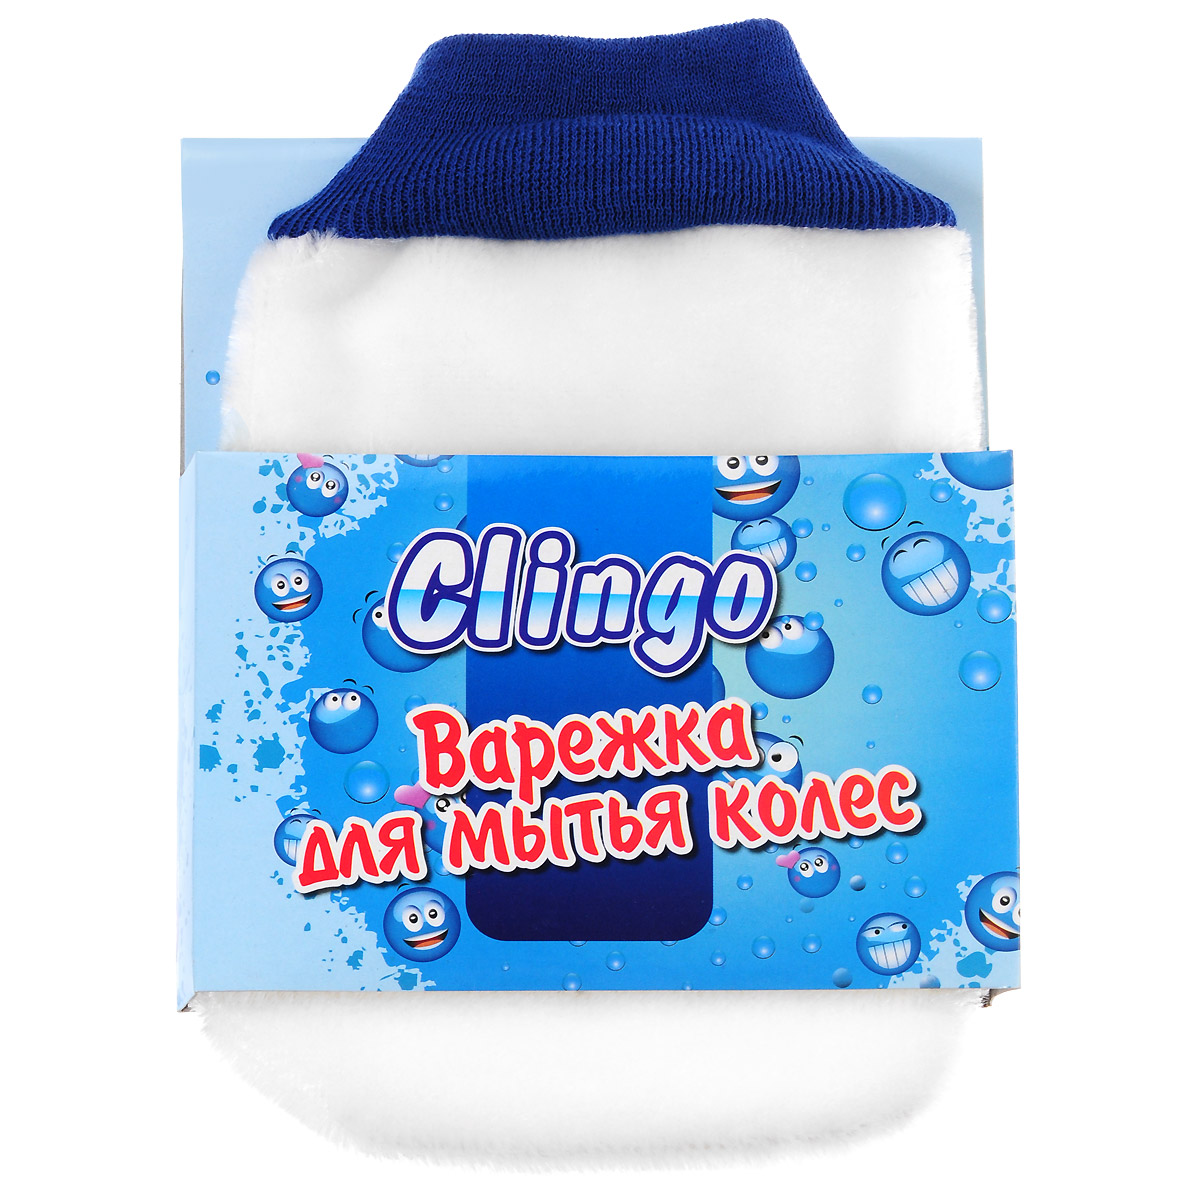     Clingo,  , 24,5   16  - ClingoCGL-01